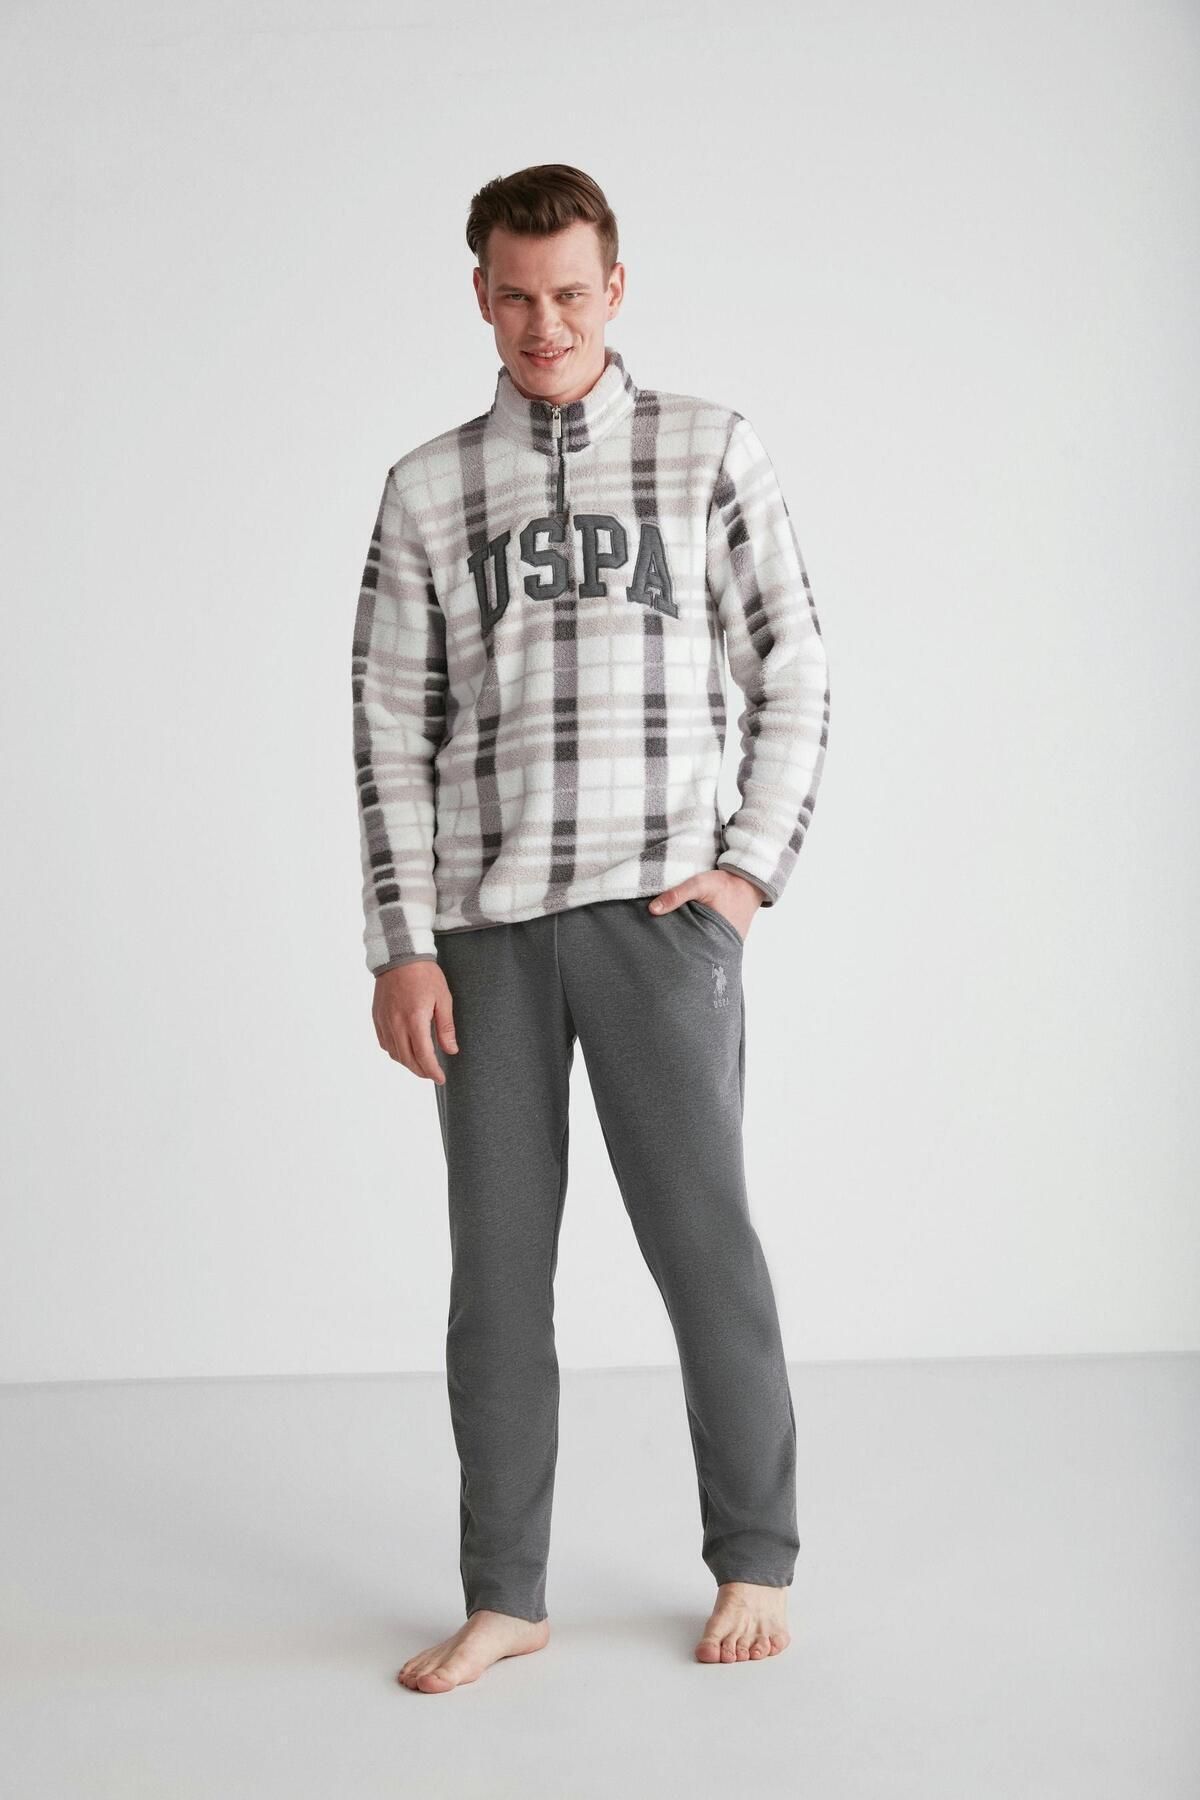 U.S. Polo Assn. Erkek Pamuklu Gri Polar Sweatshirt-Eşofman Altı Pijama Takımı